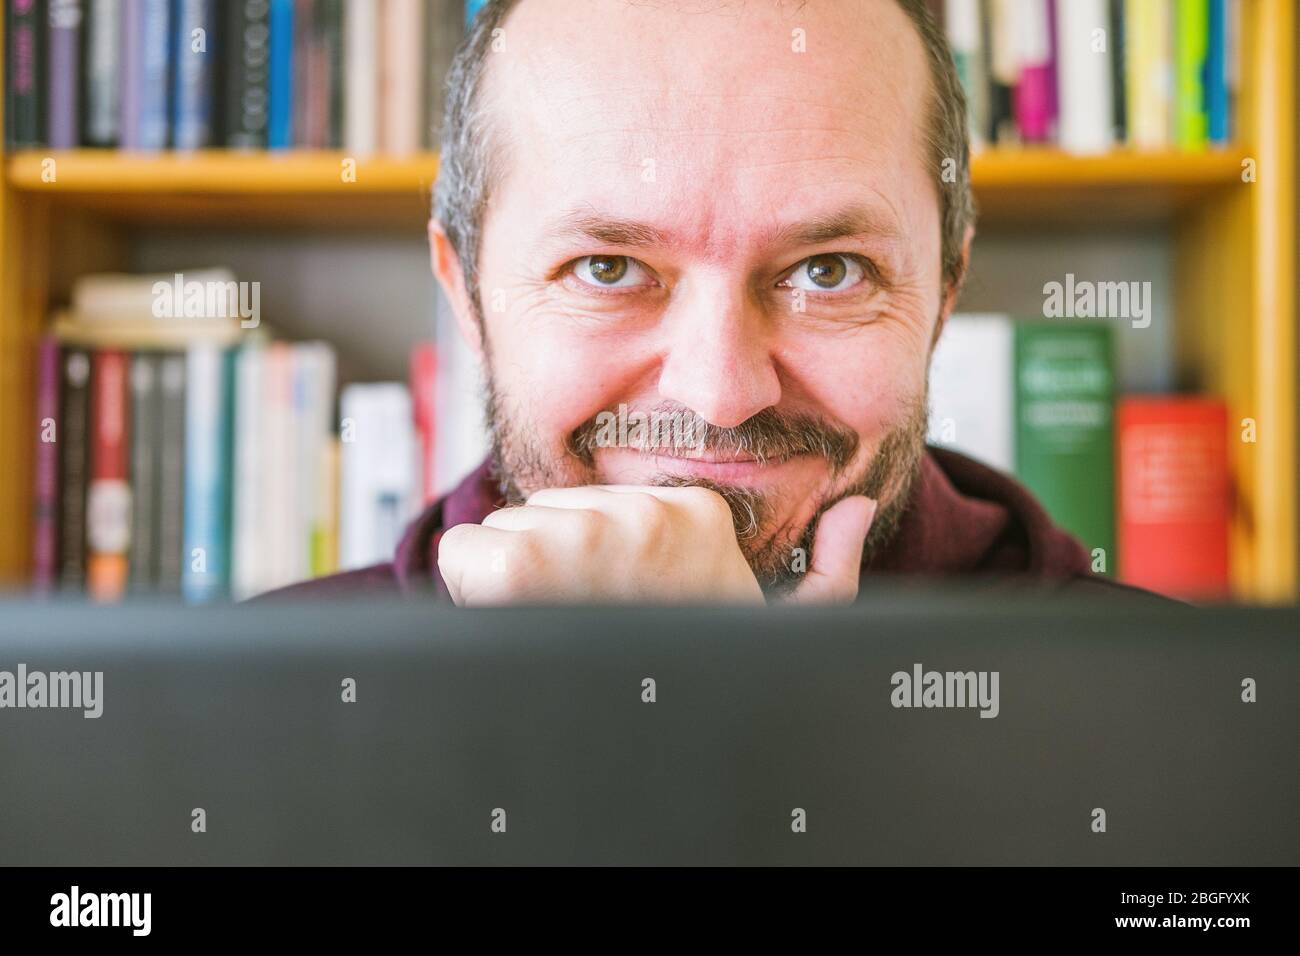 Erwachsener Mann arbeitet von zu Hause aus. Bärtiger Mann, der online von zu Hause aus auf einem Computer-Laptop arbeitet, Bücherregale hinter ihm. Gesichtsausdruck, Lächeln. Nahaufnahme Stockfoto